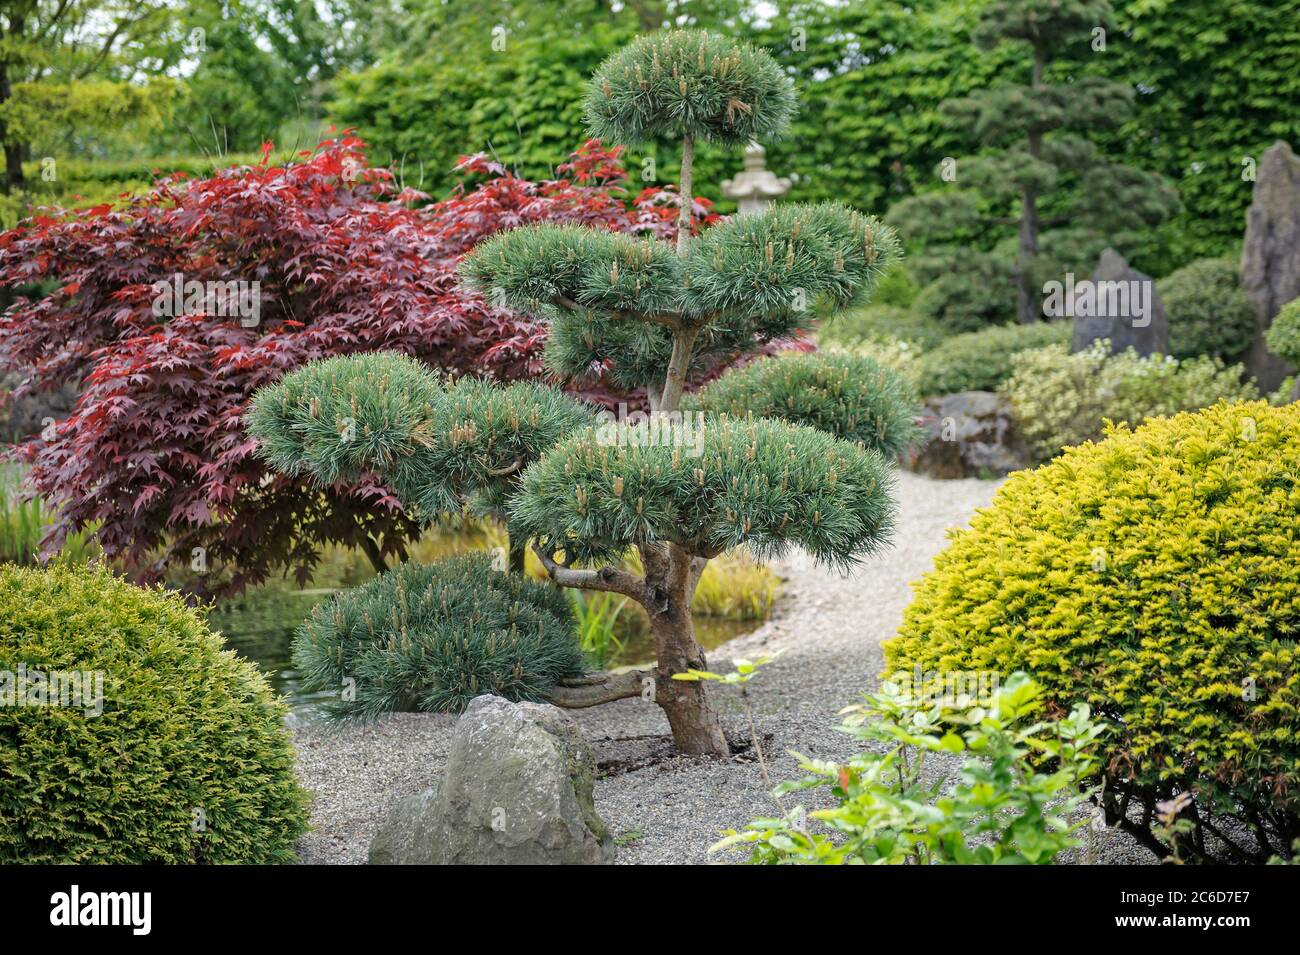 Japanischer Garten, Foehre , Pinus sylvestris Glauca, Japanese garden, pine, Pinus sylvestris Glauca Stock Photo